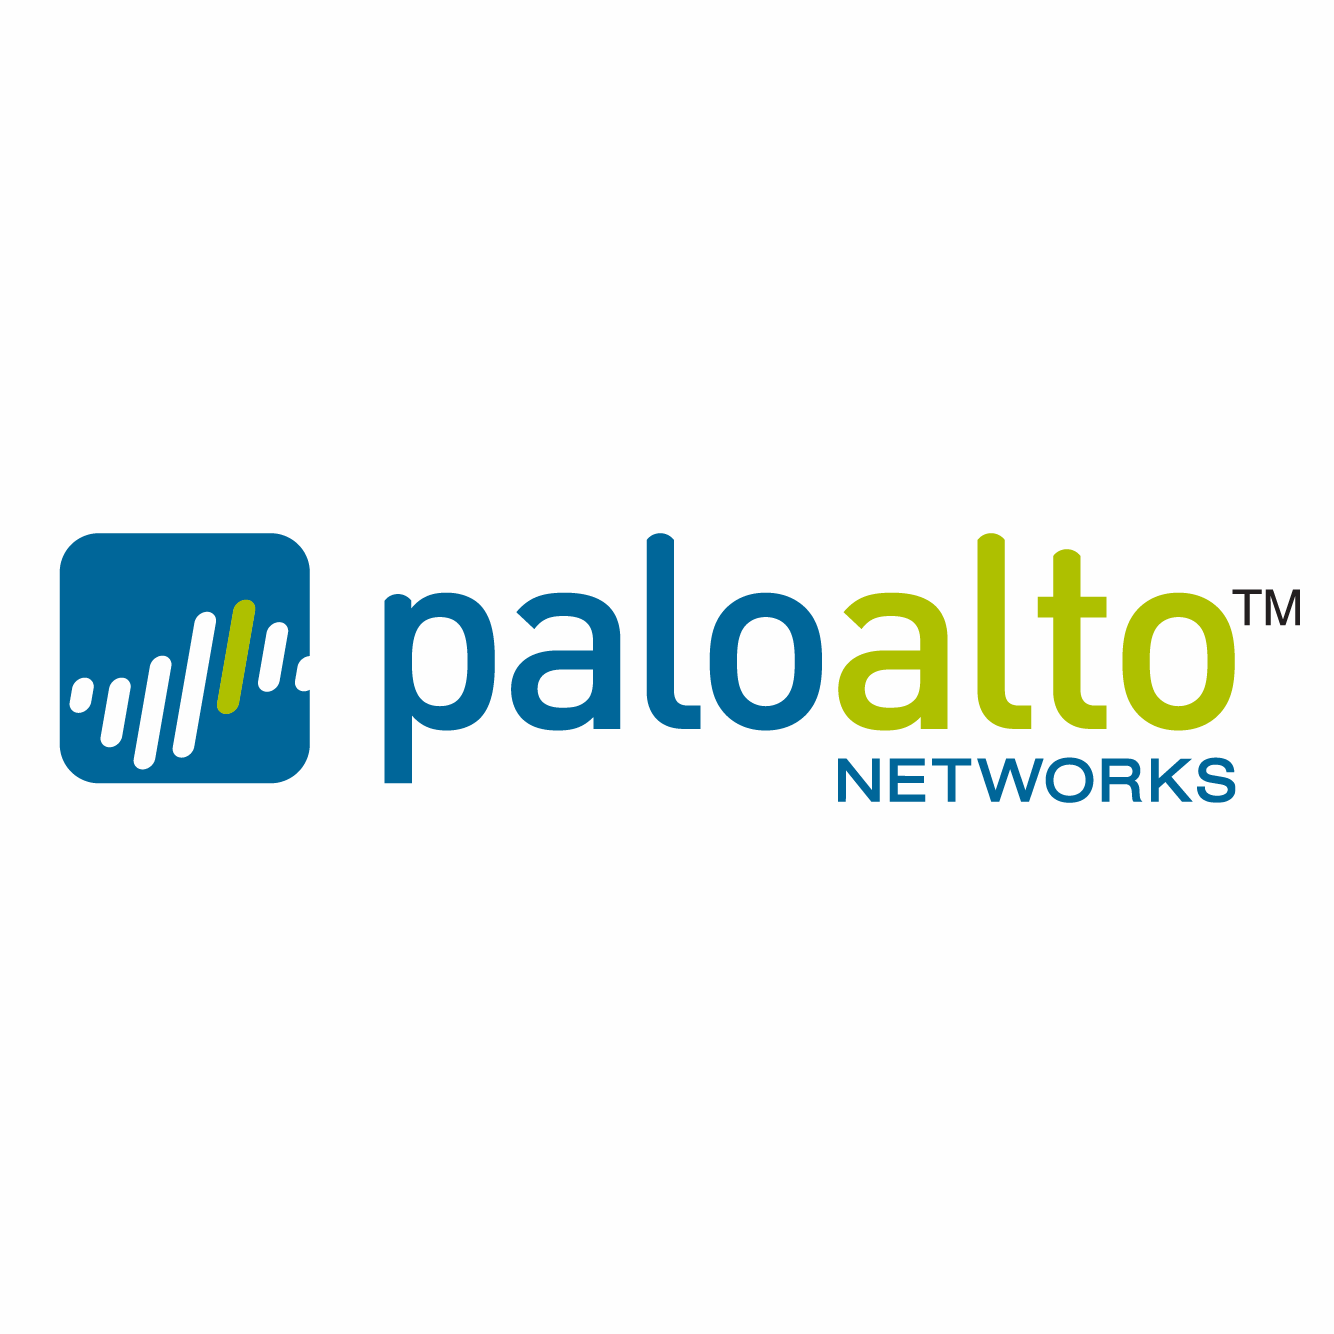 https://securetech.local/wp-content/uploads/2019/02/15.PALOALTONWS.png